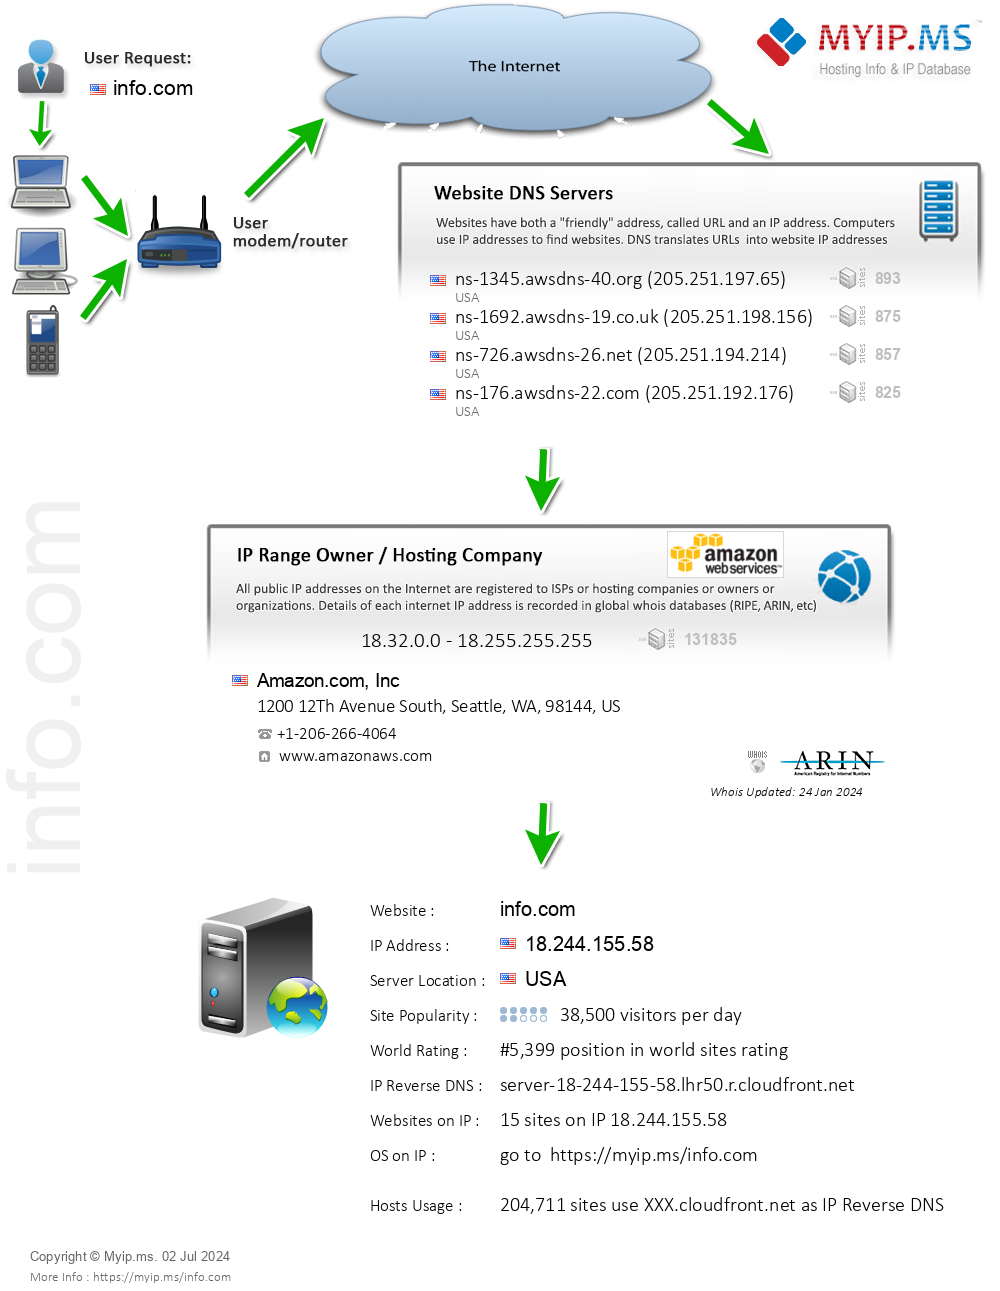 Info.com - Website Hosting Visual IP Diagram